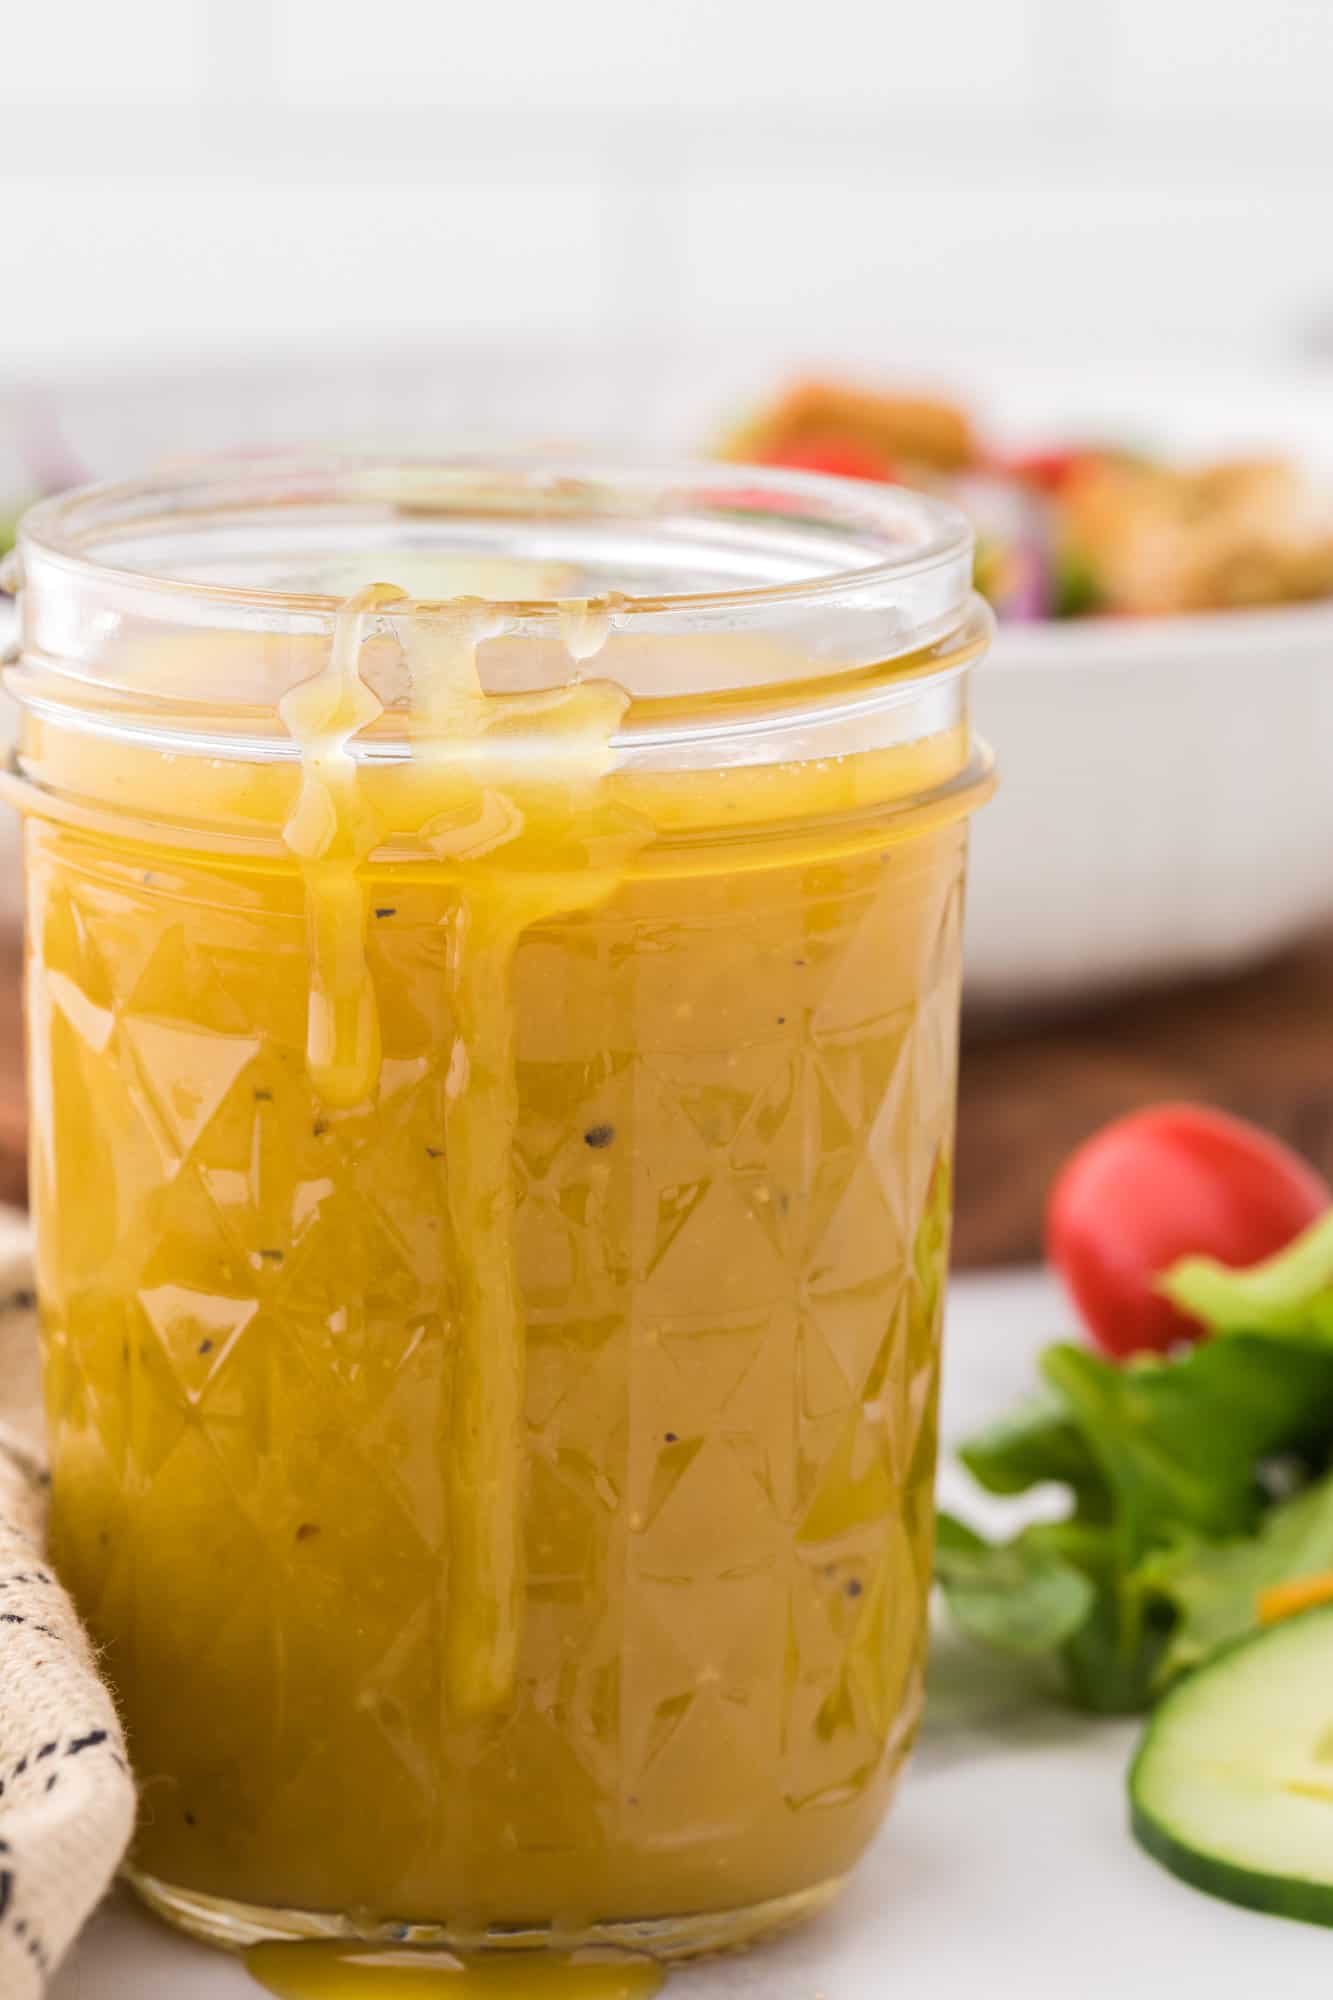 Vinaigrette au miel et à la moutarde dégoulinant sur le côté du bocal.